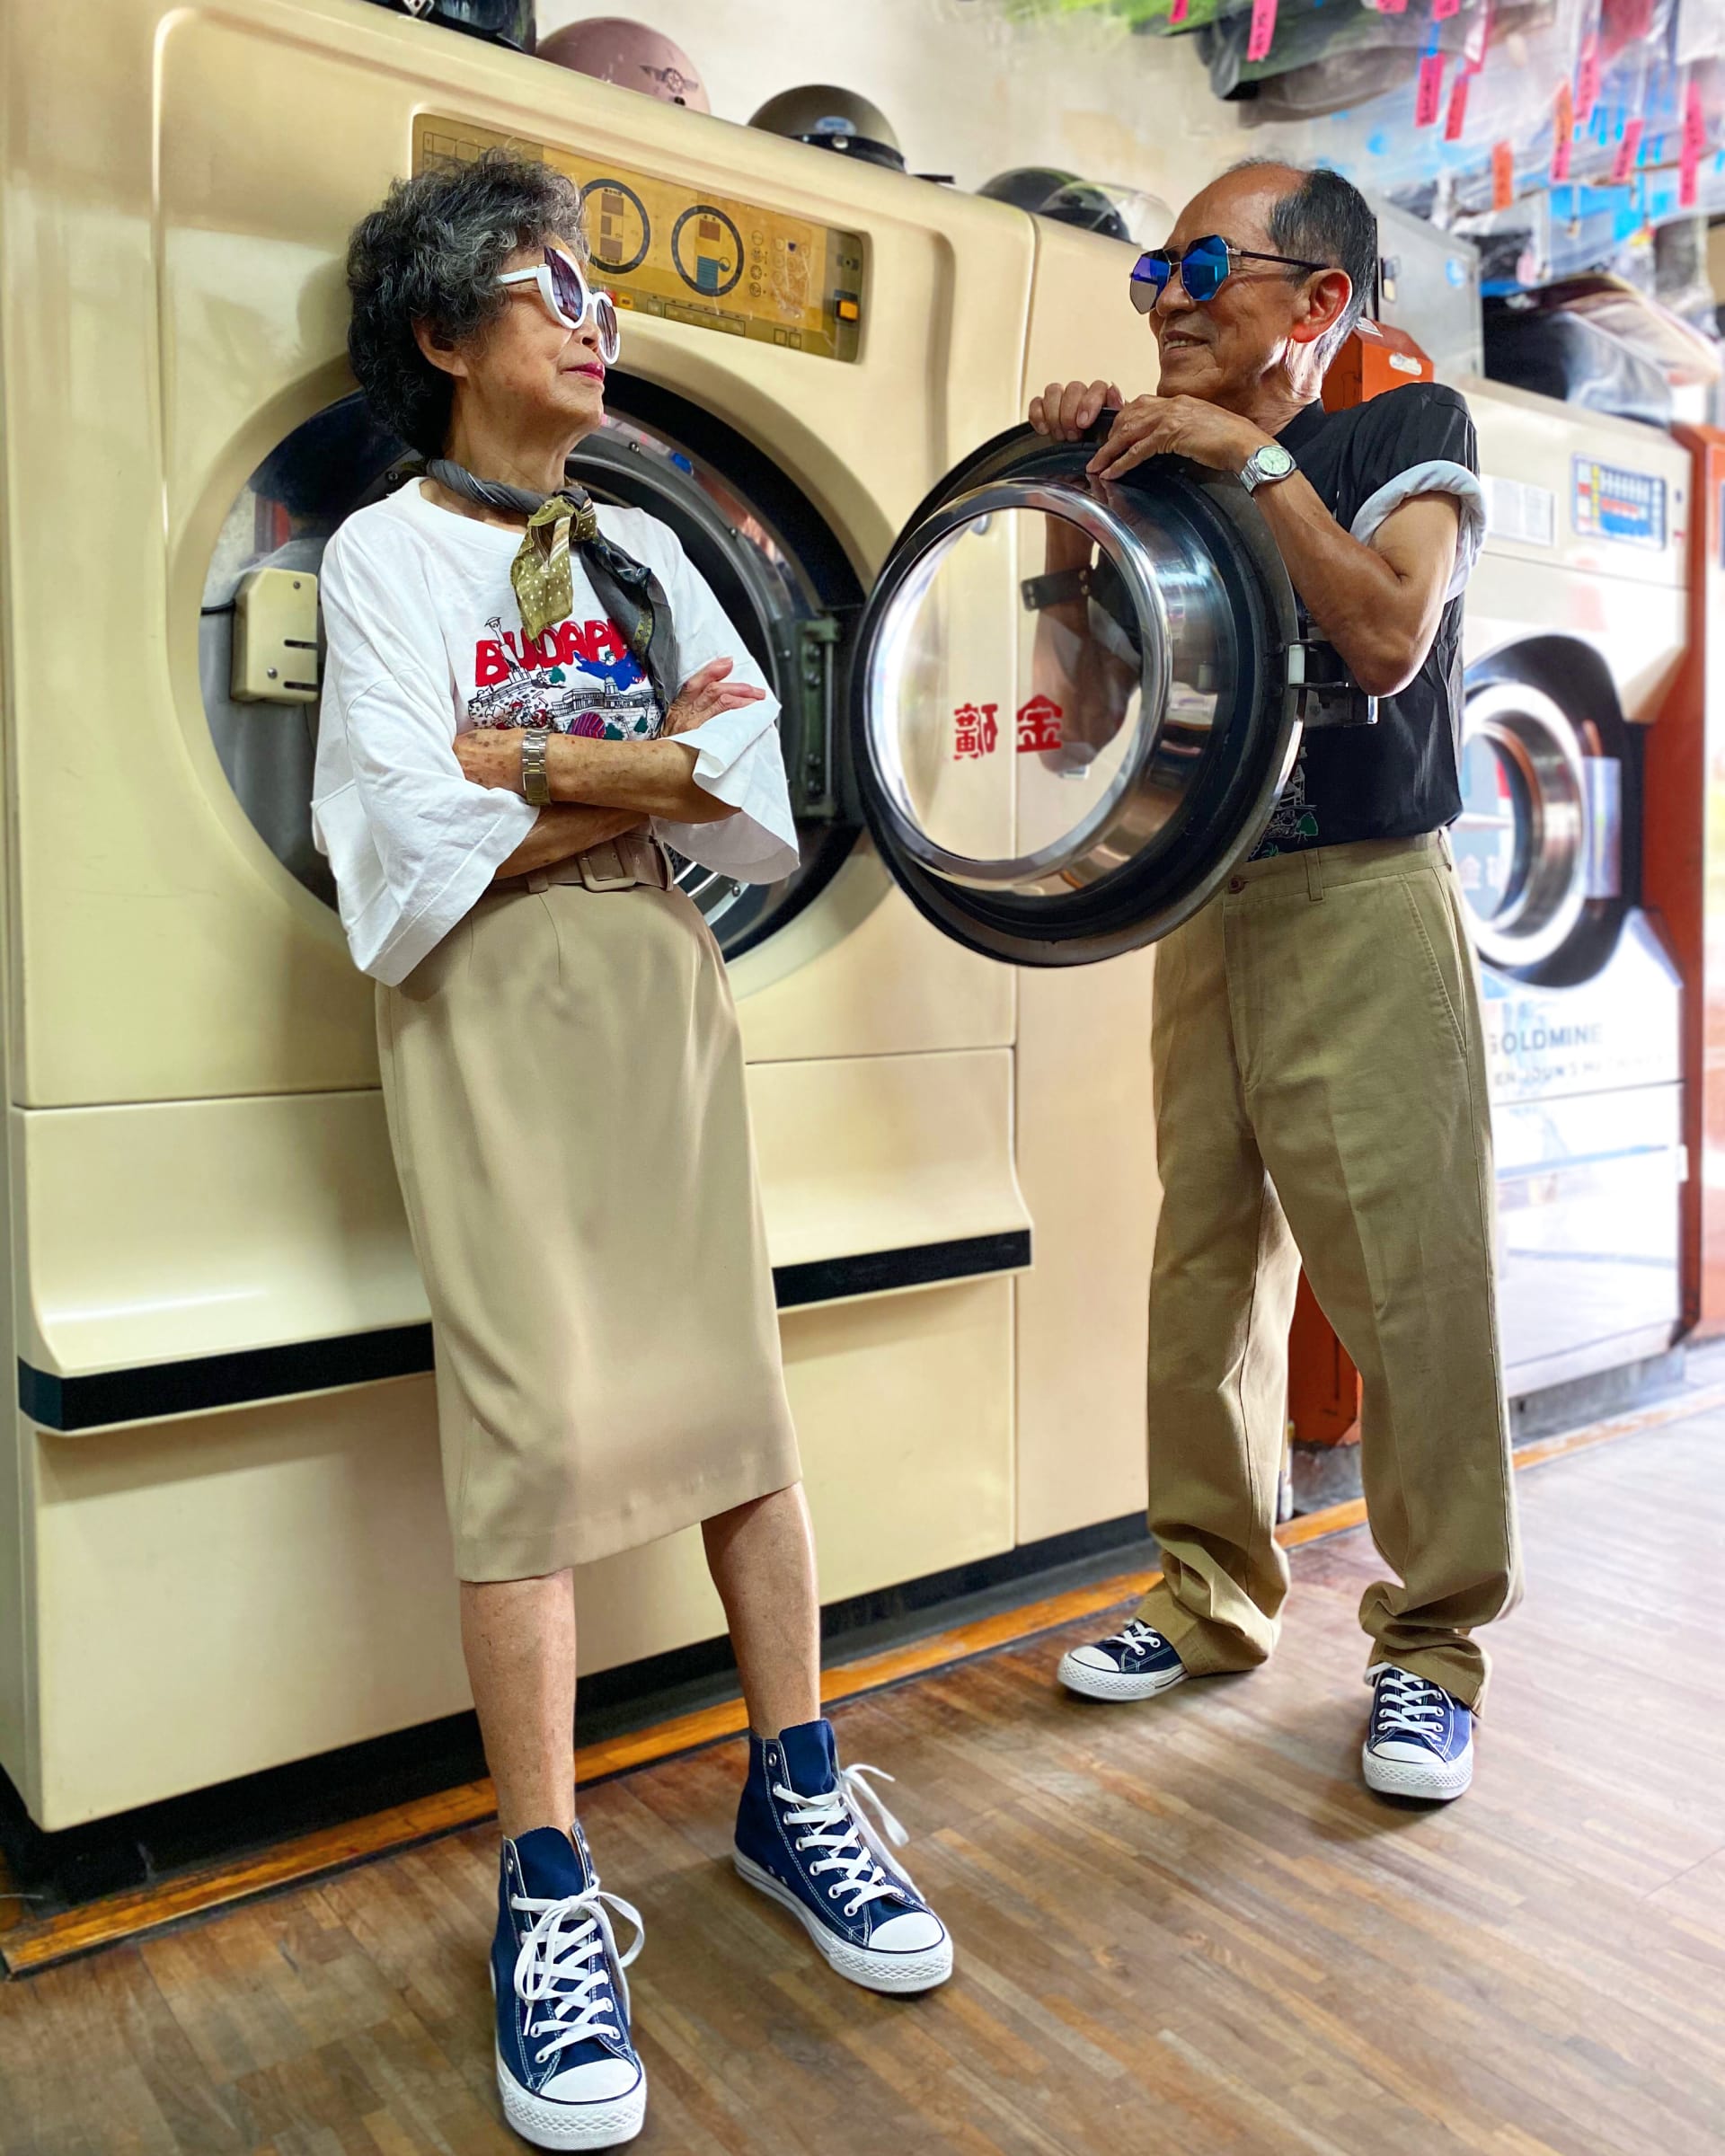 في تايوان.. ثنائي عجوز يديران مغسلة يسحران مواقع التواصل بعد التأنق بملابس زبائنهم المنسية